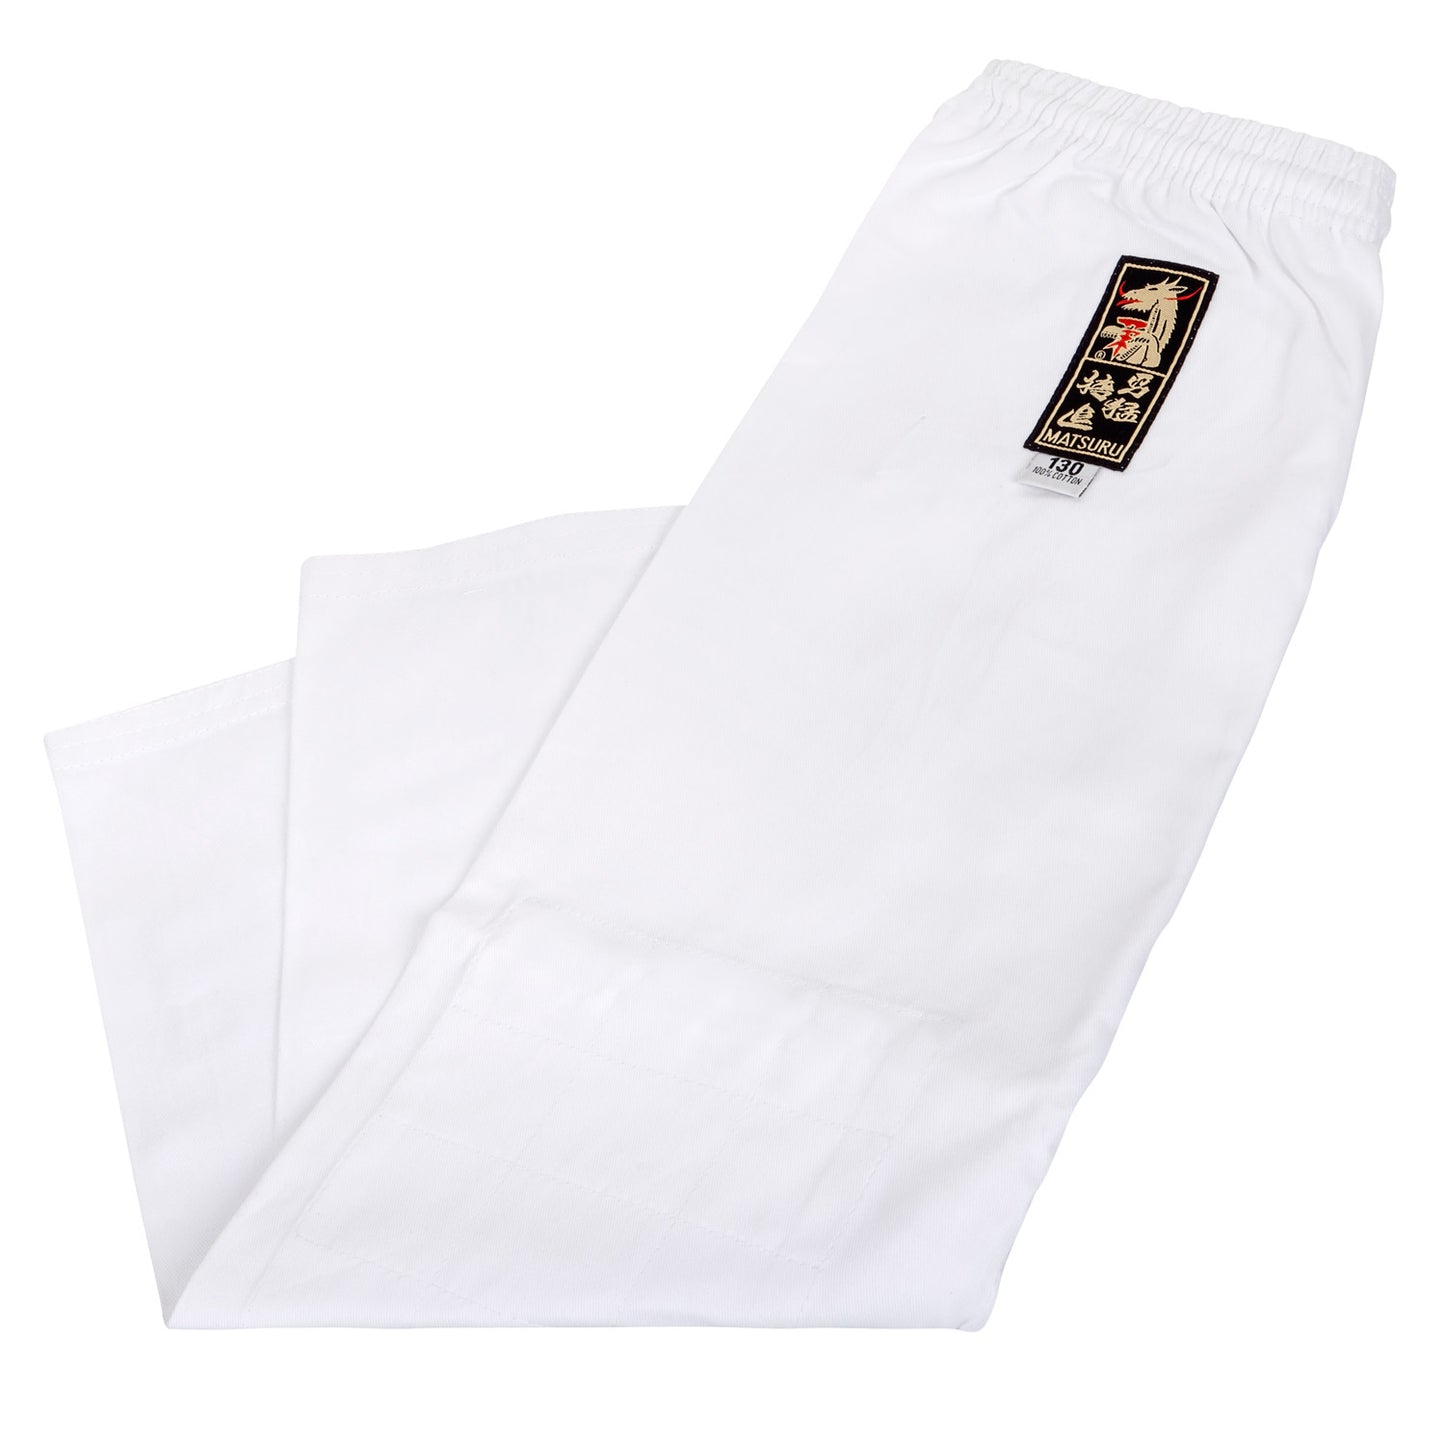 Pantalon Judogi Matsuru Débutant - Blanc